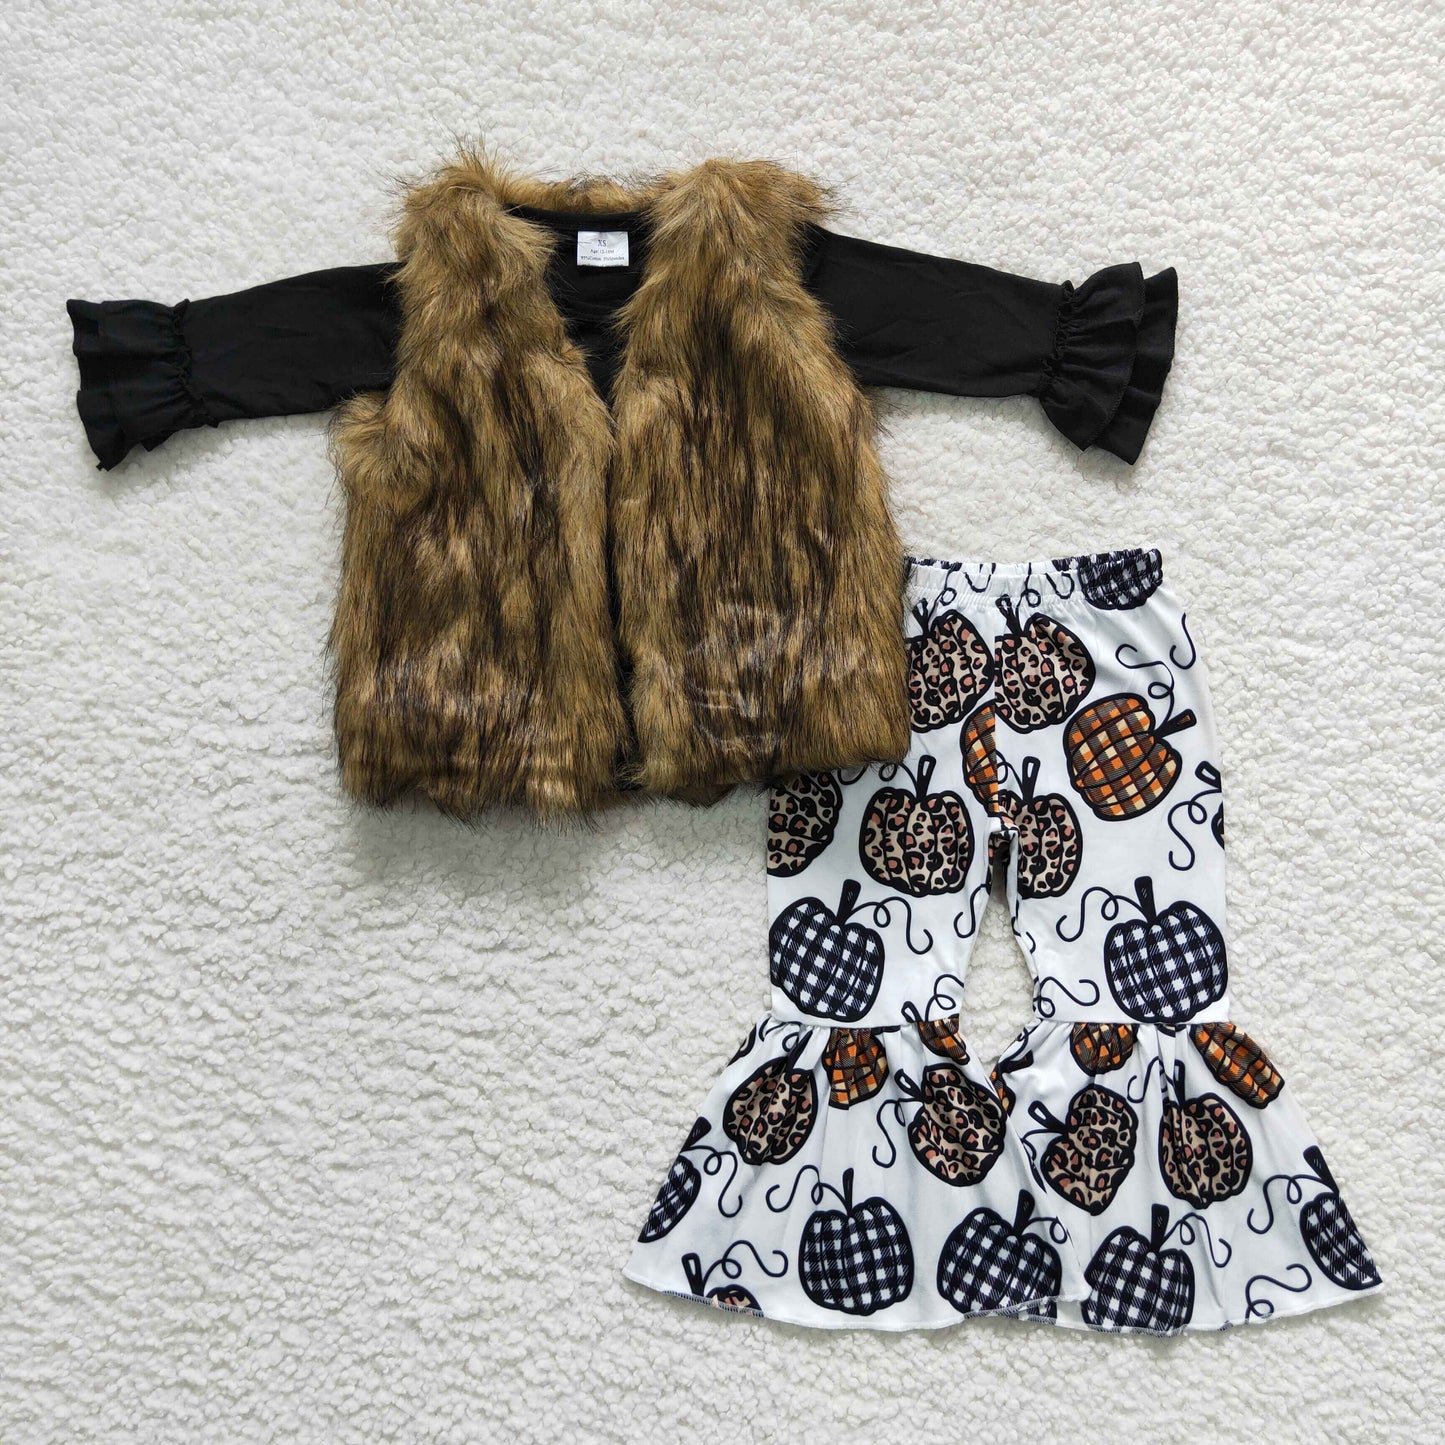 3 Piece Outfit Vest 6 A21-4+Black Top Pumpkin Pants GLP0263 Outfit